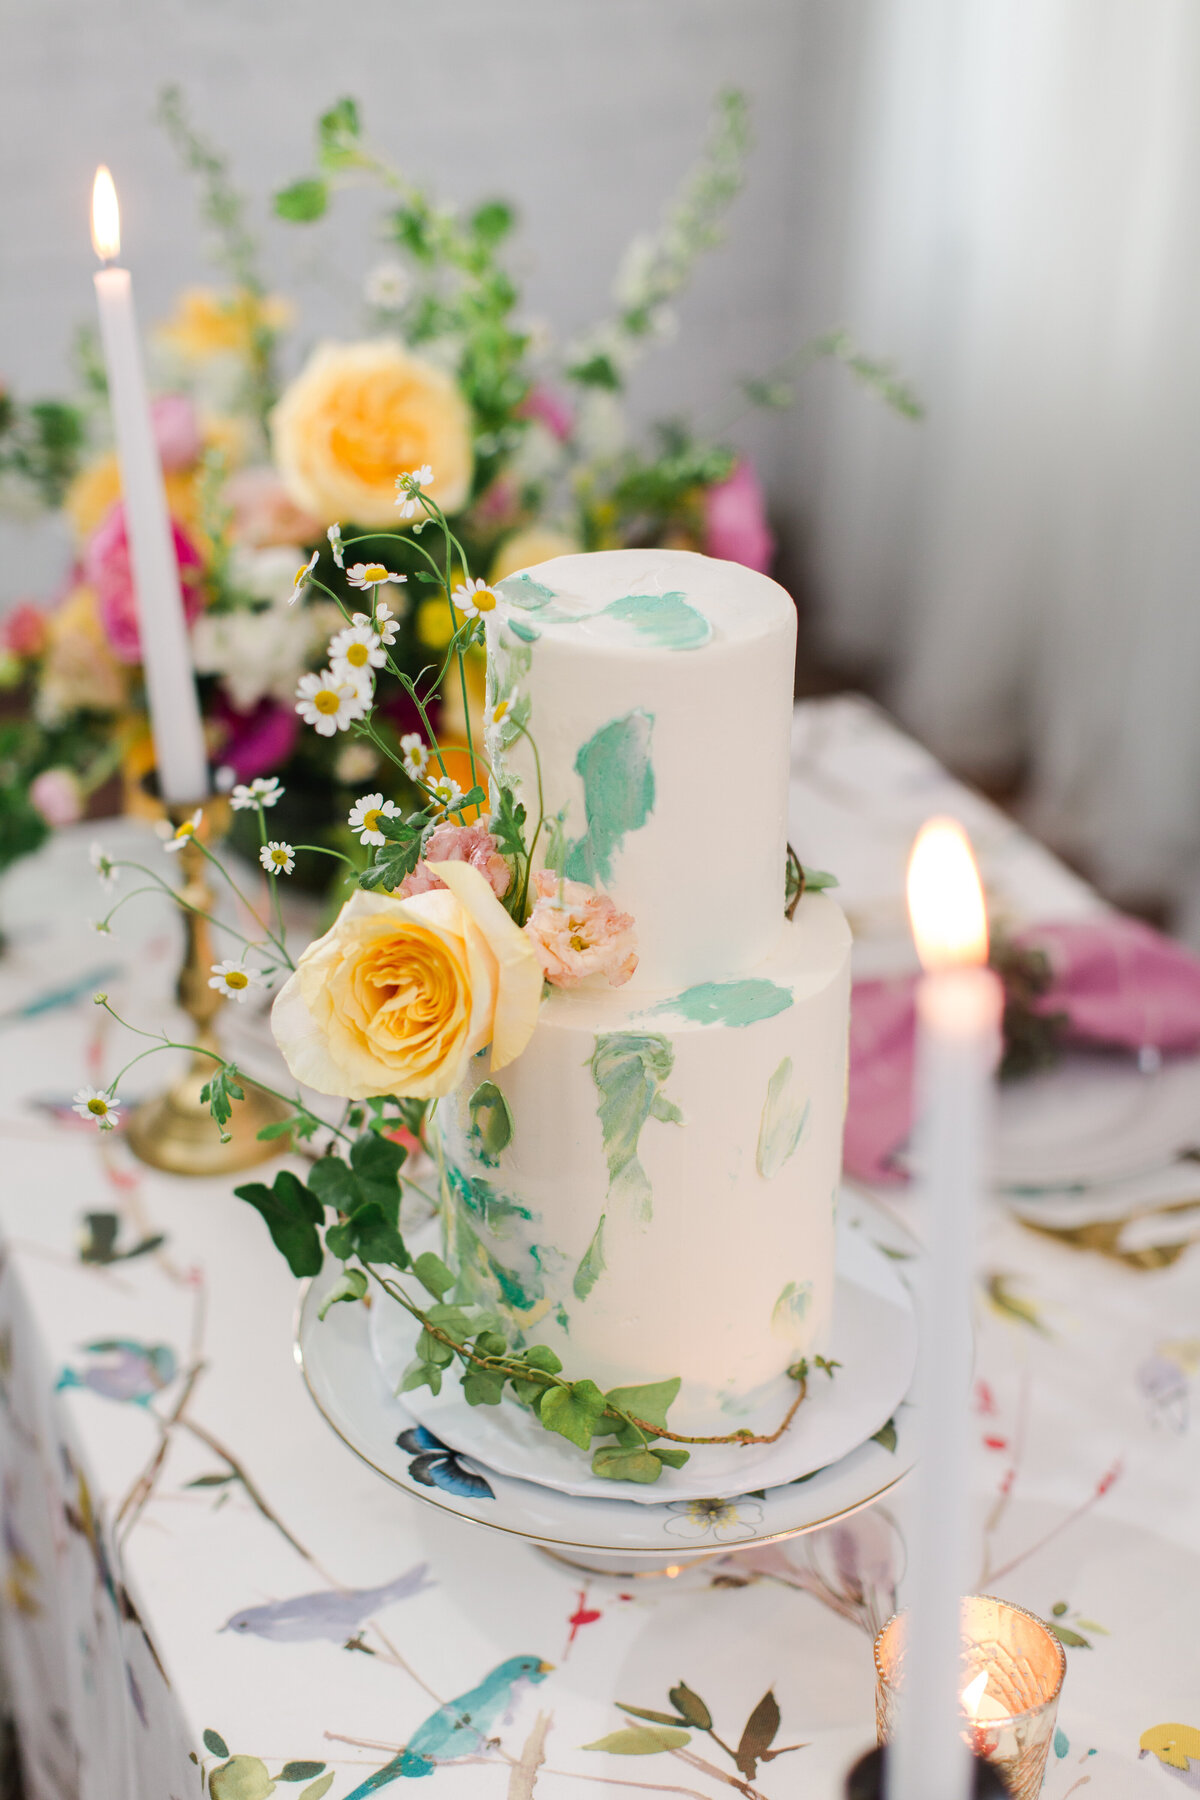 Flowers on cake